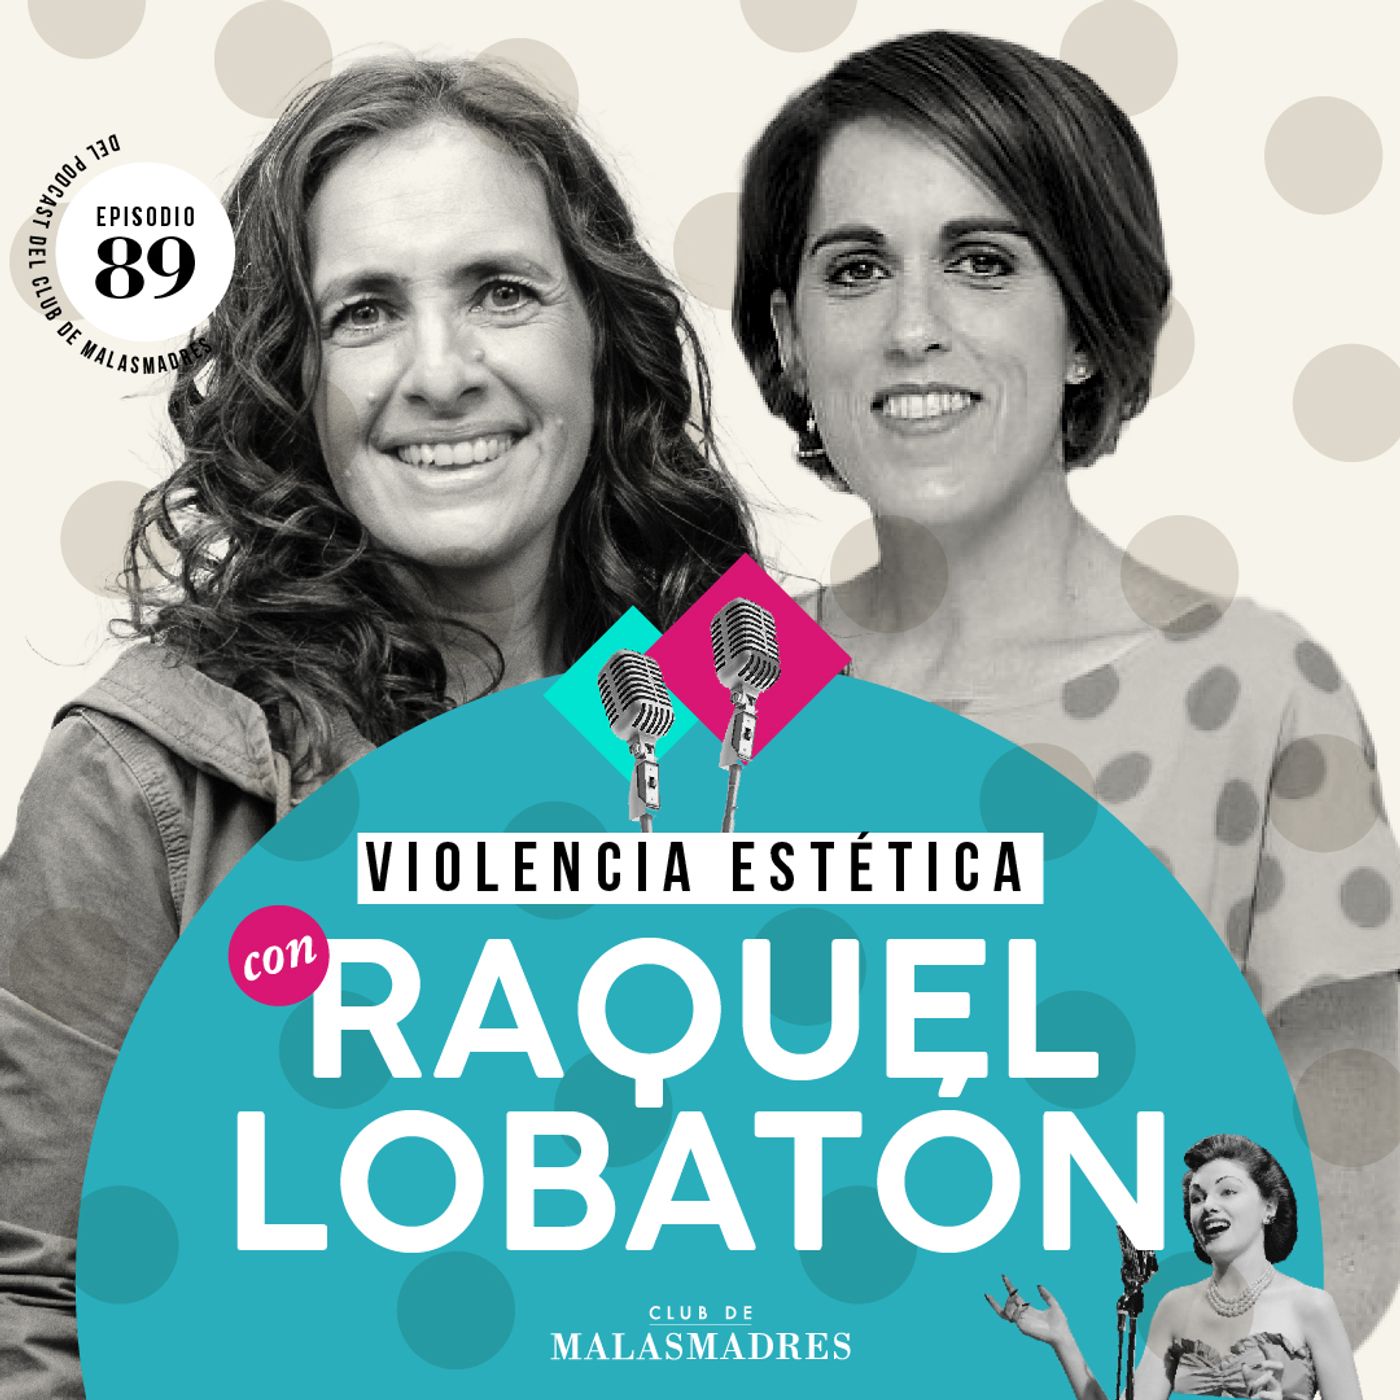 Más allá de los estereotipos: conversaciones sobre gordofobia y cultura de dieta con Raquel Lobatón